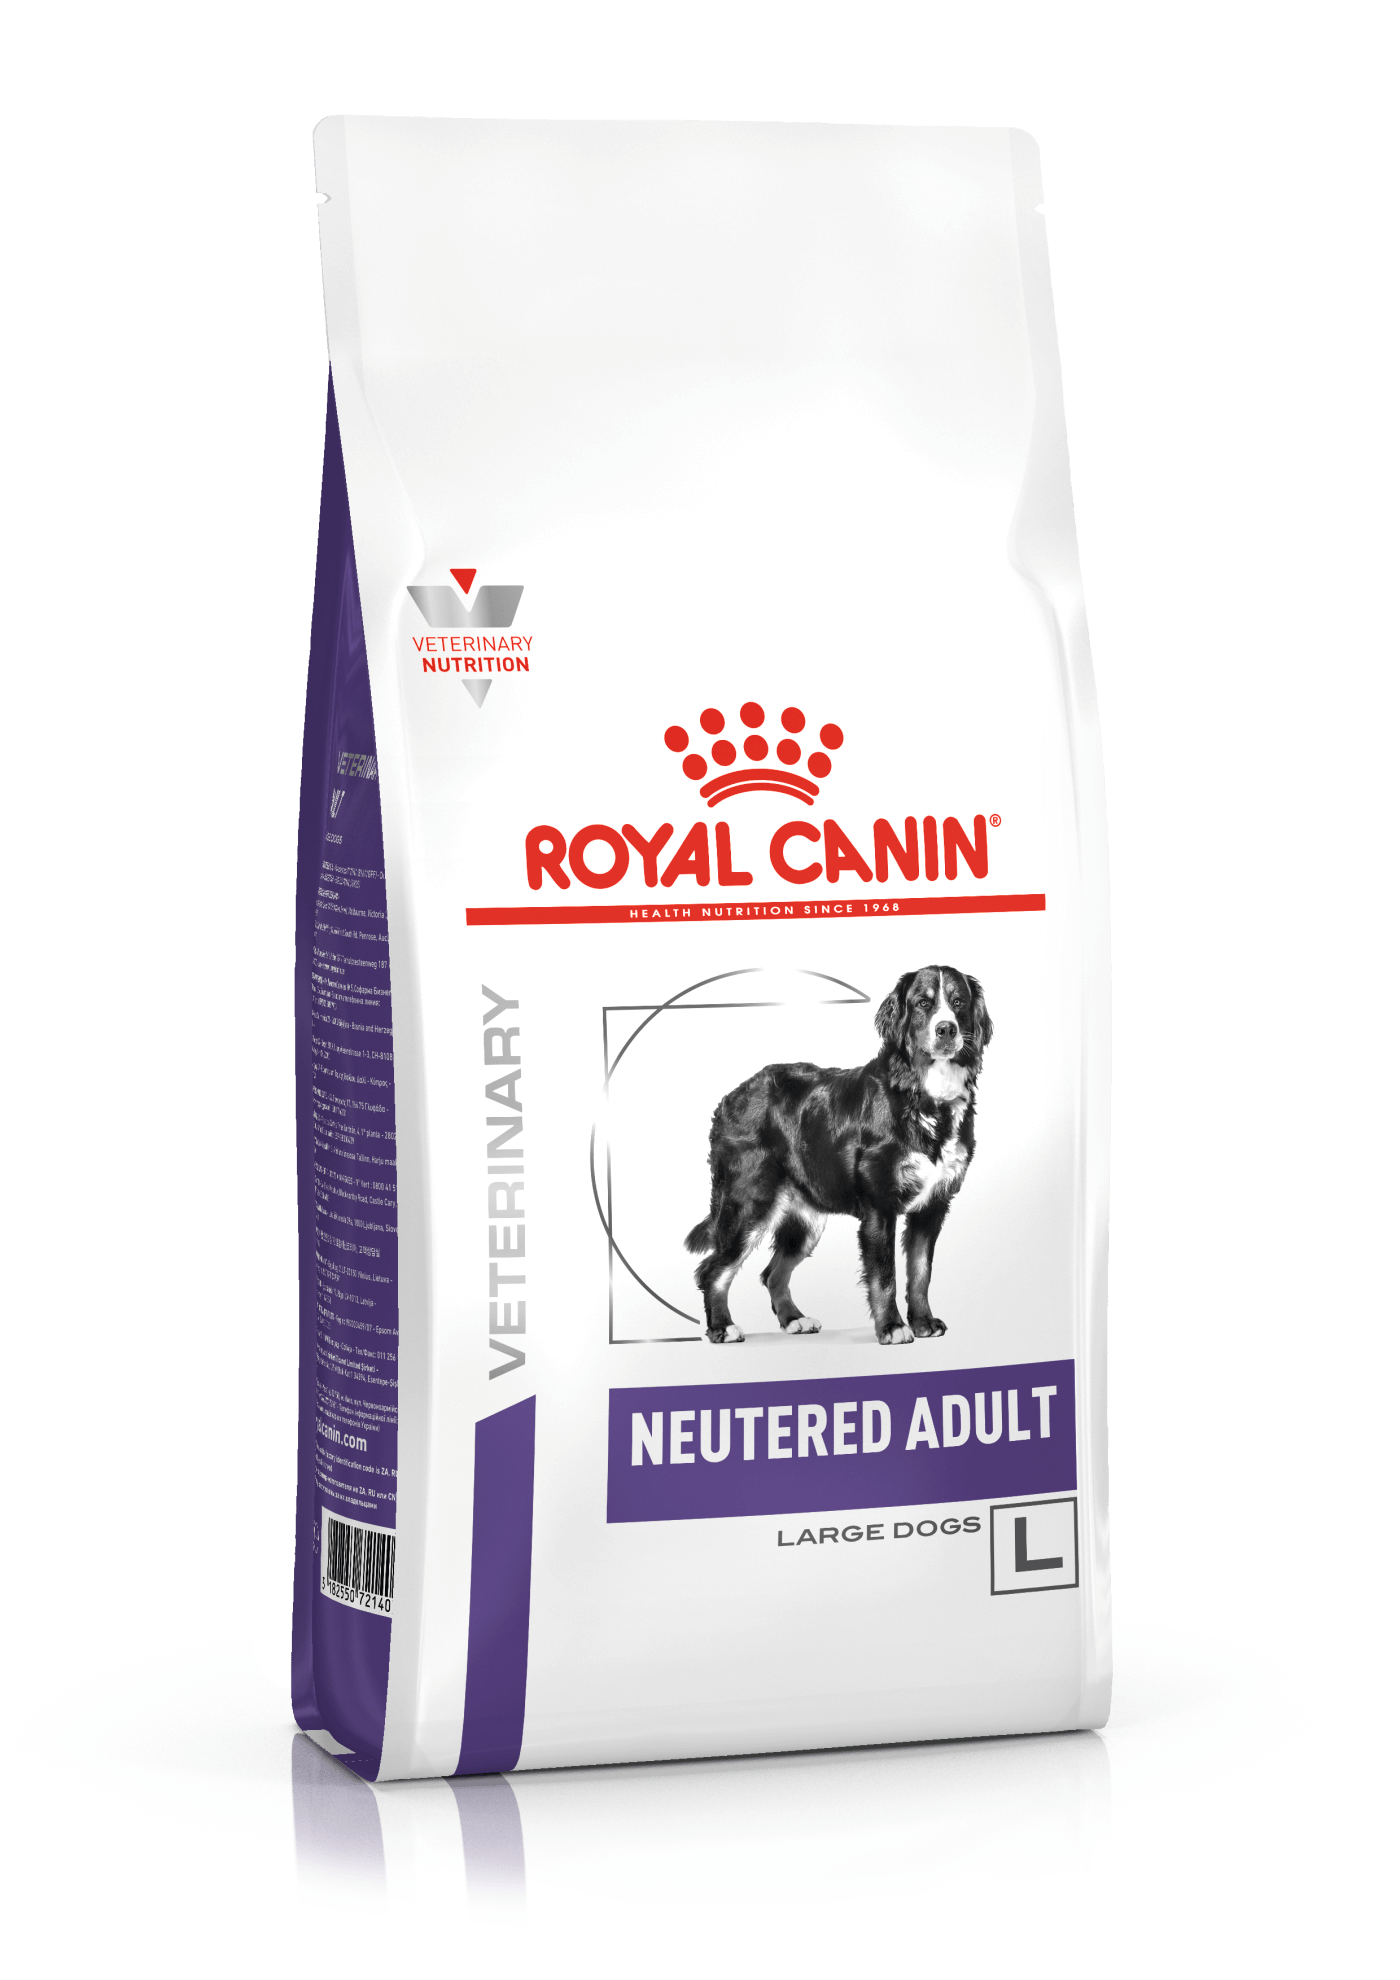 Royal Canin Neutered Adult Large Dog